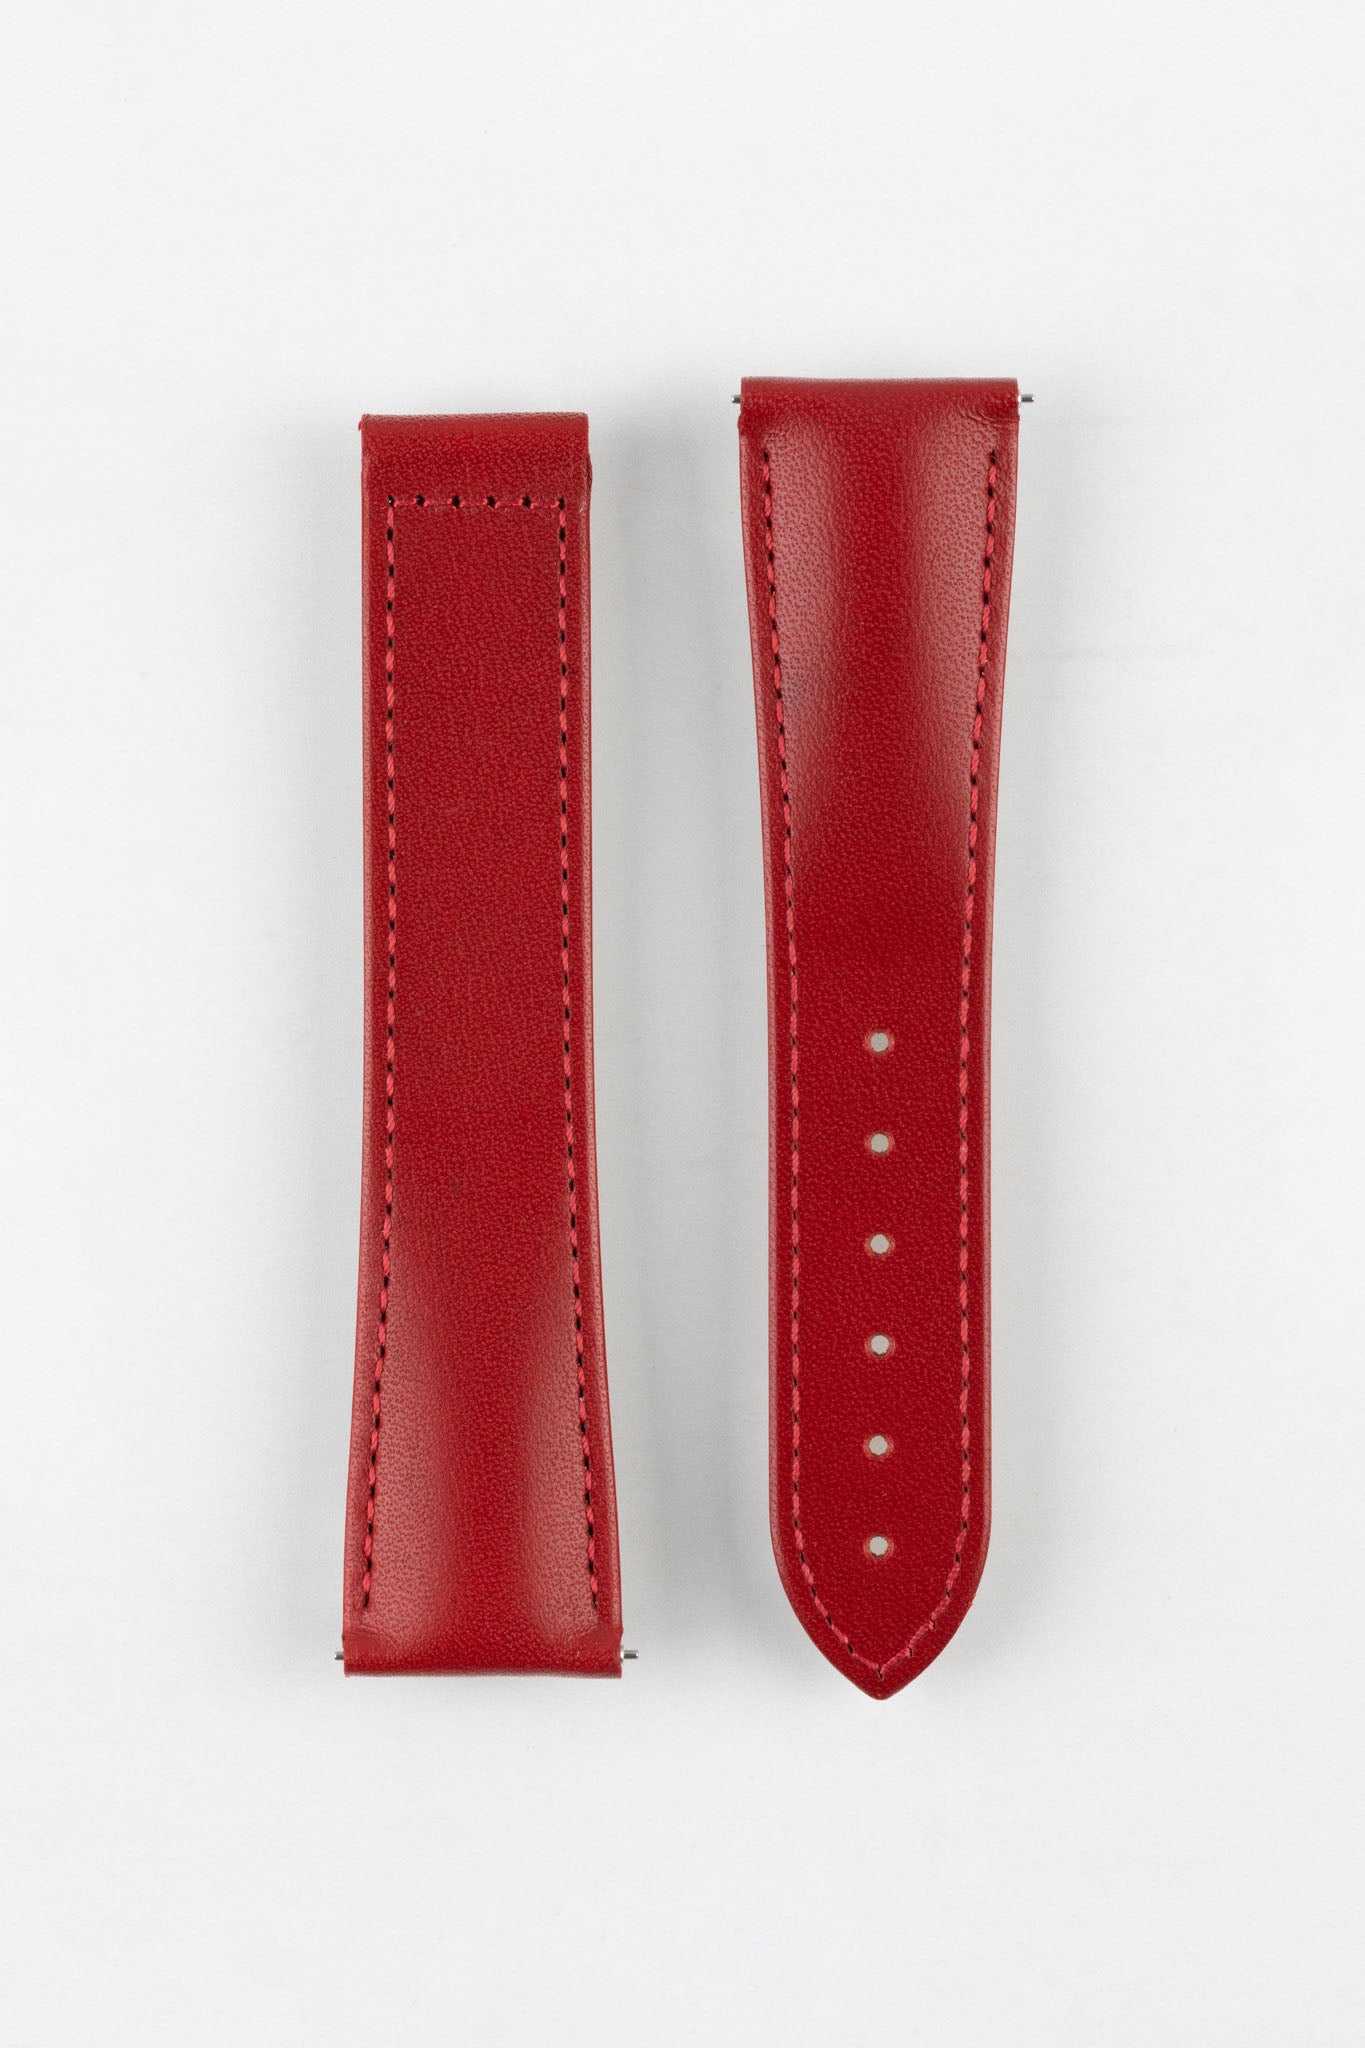 Hirsch VOYAGER Calfskin Leather Deployment Watch Strap in RED/RED